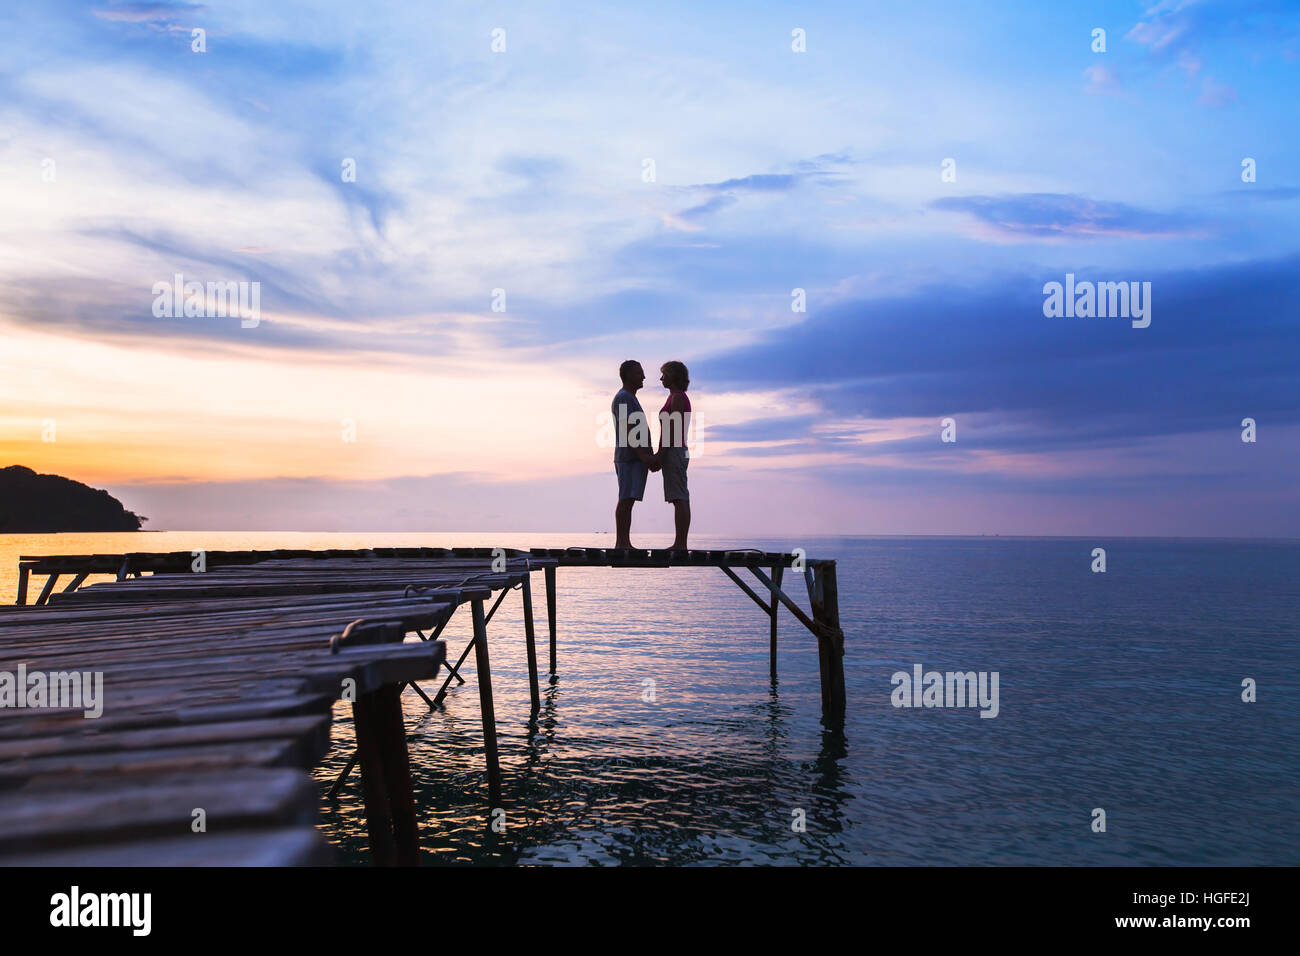 schöne romantische Liebe Hintergrund, Silhouette der liebevollen paar auf dem Pier am sunset beach Stockfoto